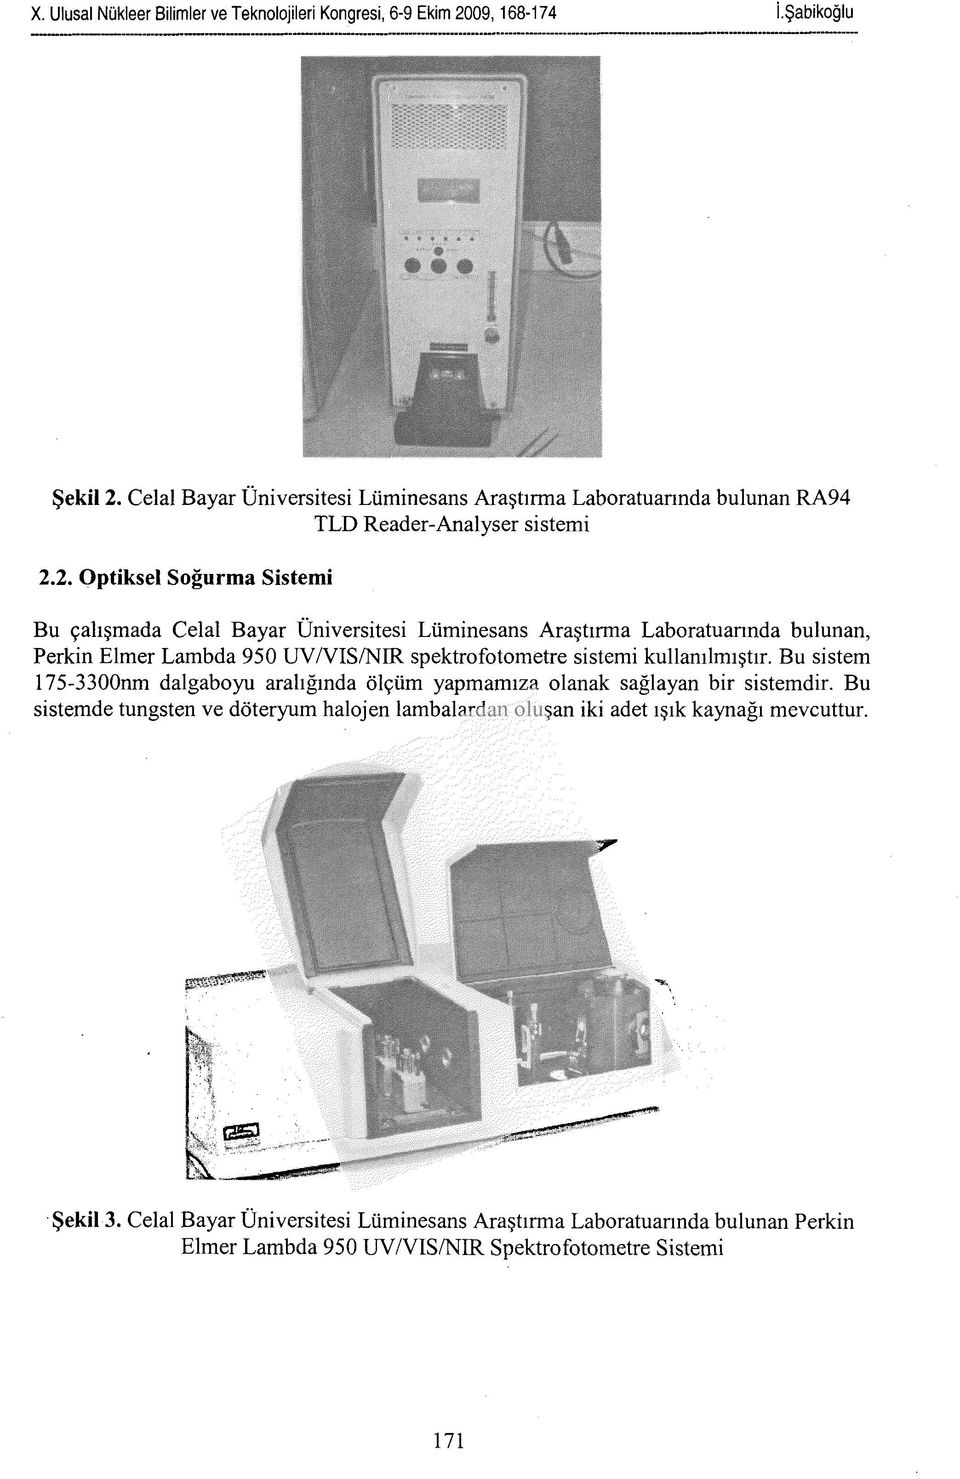 2. Optiksel Soğurma Sistemi Bu çalışmada Celal Bayar Üniversitesi Lüminesans Araştırma Laboratuarında bulunan, Perkin Elmer Lambda 950 UY/VIS/NIR